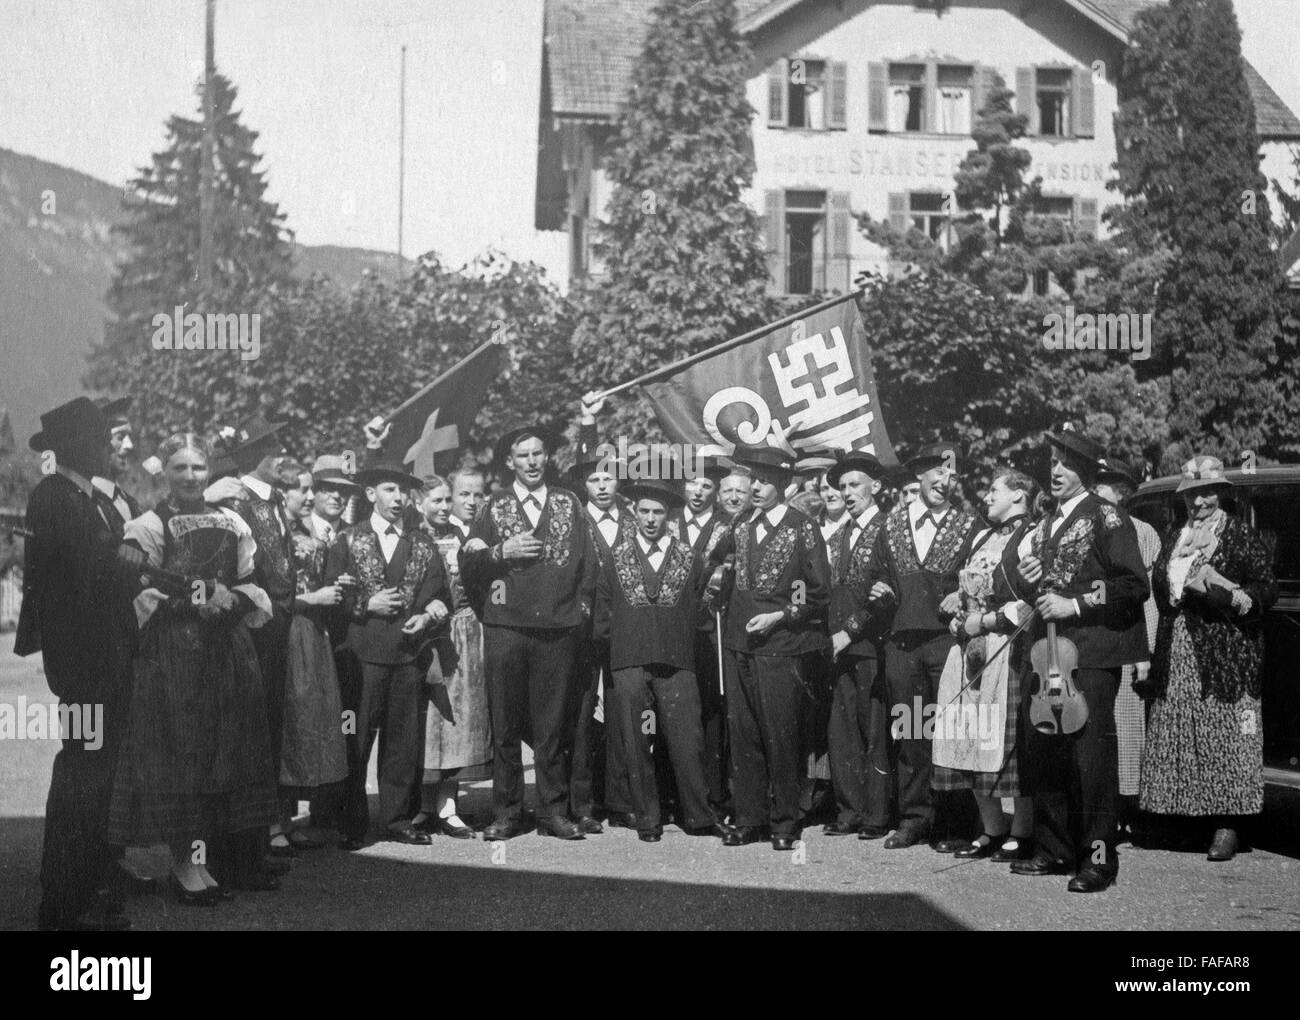 Die Mitglieder des Jodlerklubs a Stans im Kanton Nidwalden bringen ein Ständchen, Schweiz 1930er Jahre. Membri della Stans yodeller's club a Stans nel canton Nidvaldo, Svizzera 1930s. Foto Stock